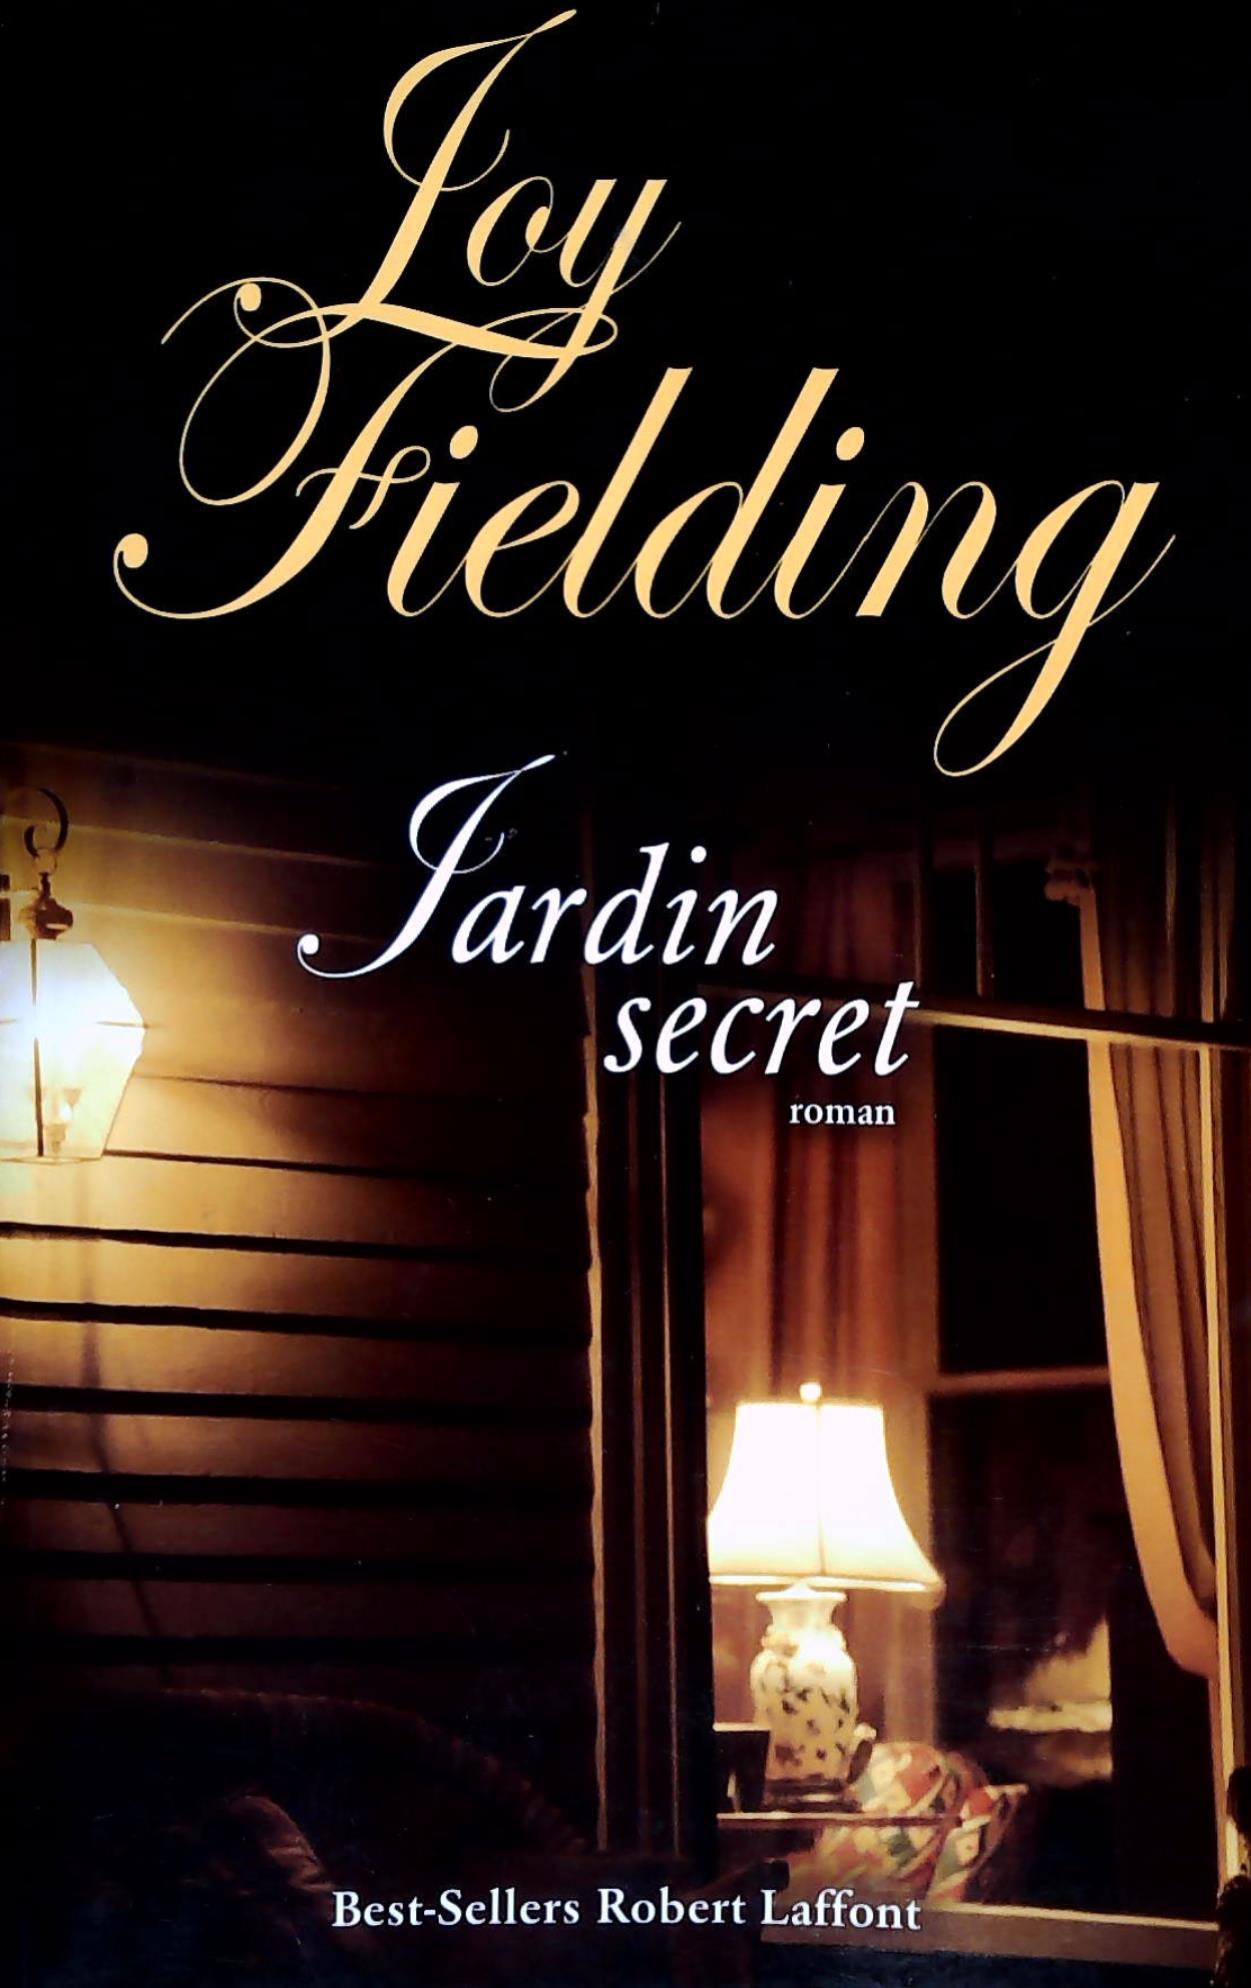 Livre ISBN 2221099141 Jardin secret (Joy fielding)